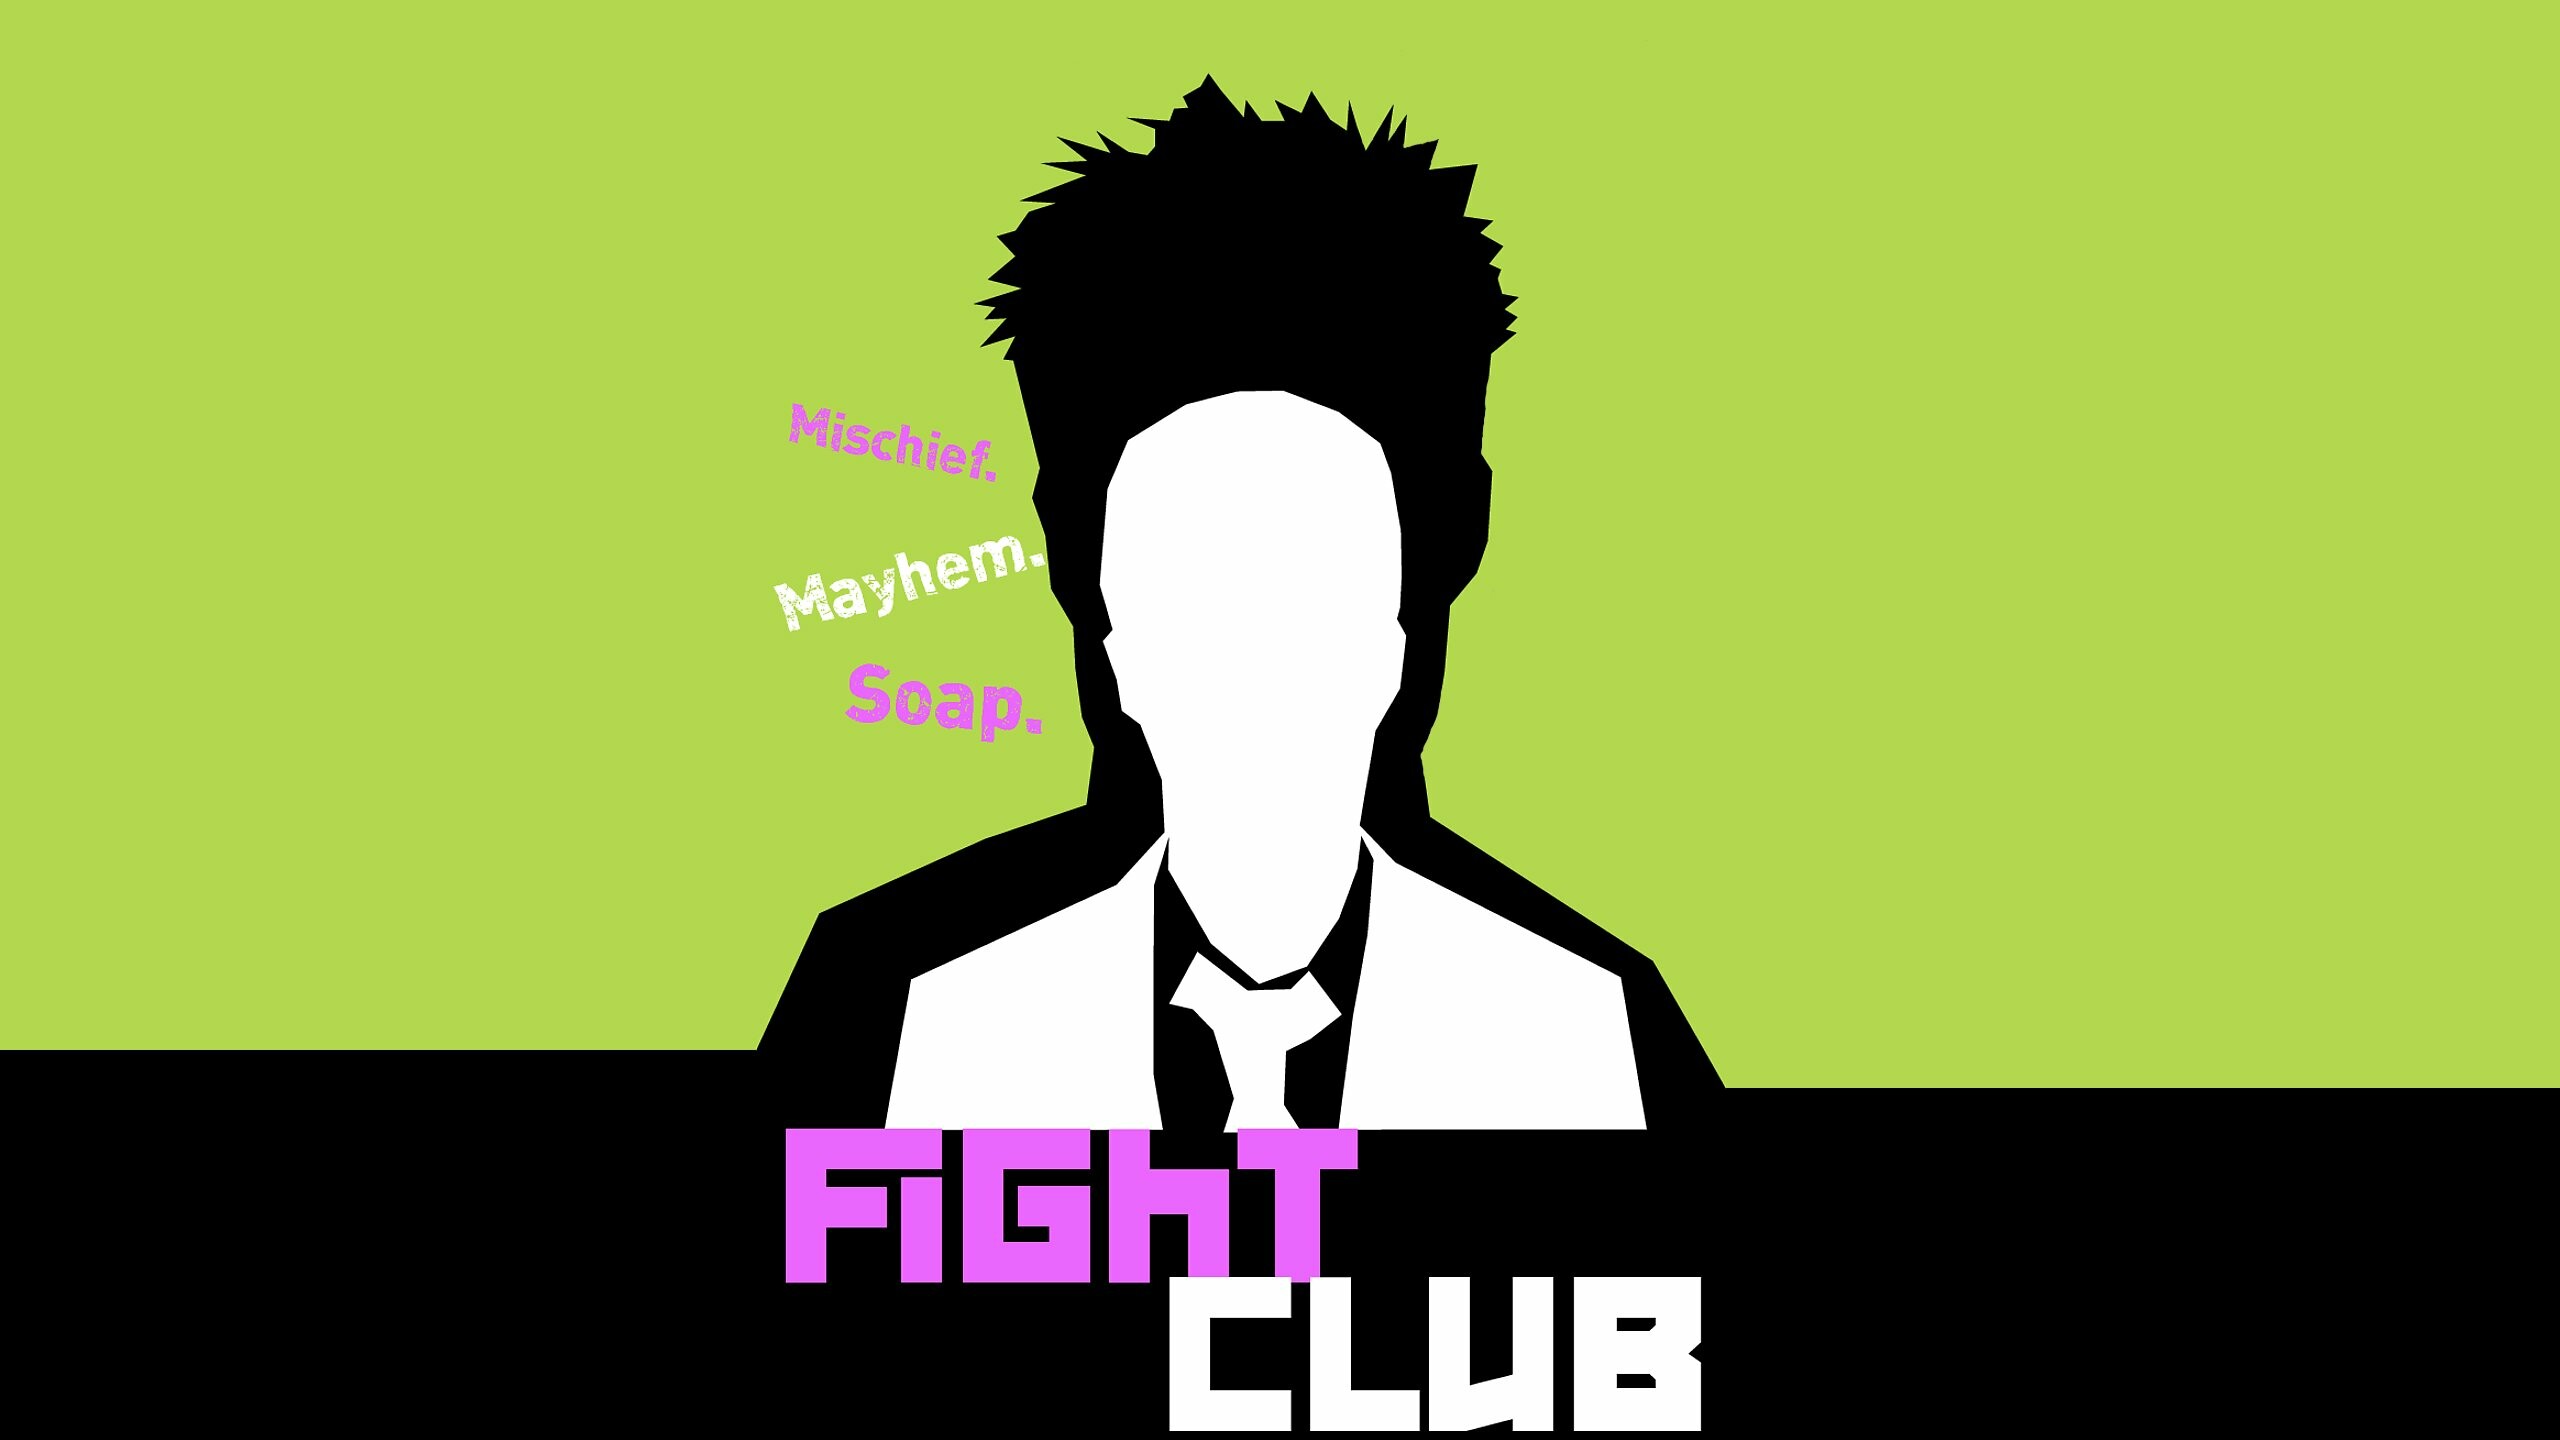 Fight Club: Mischief, Mayhem, Soap, Jim Uhls wrote the film adaptation. 2560x1440 HD Wallpaper.